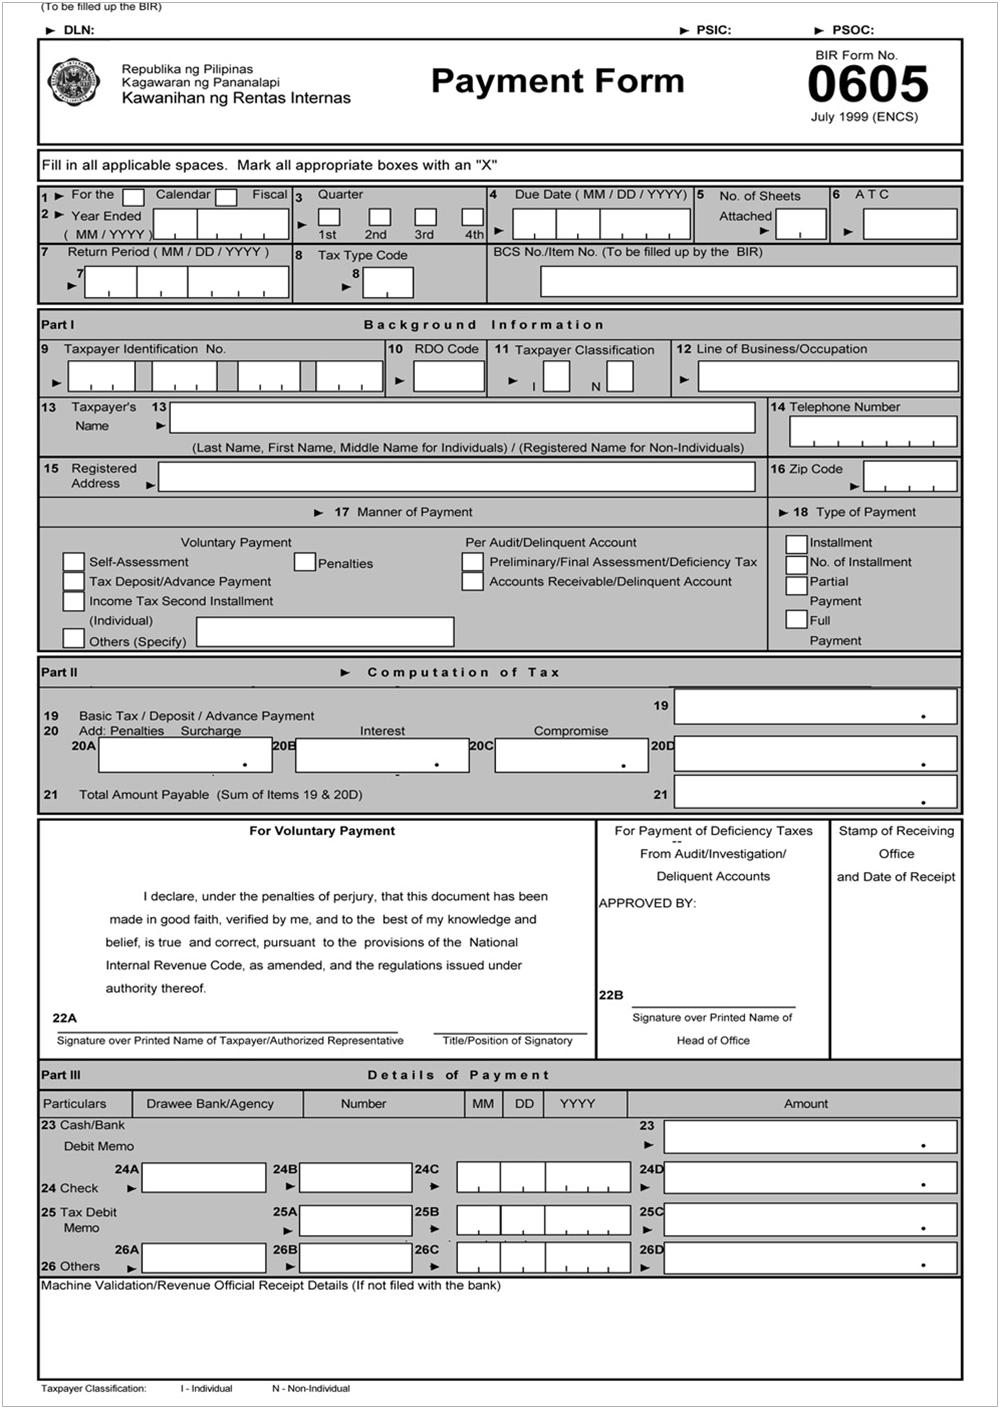 BIR Form 0605 Annual Registration Fee